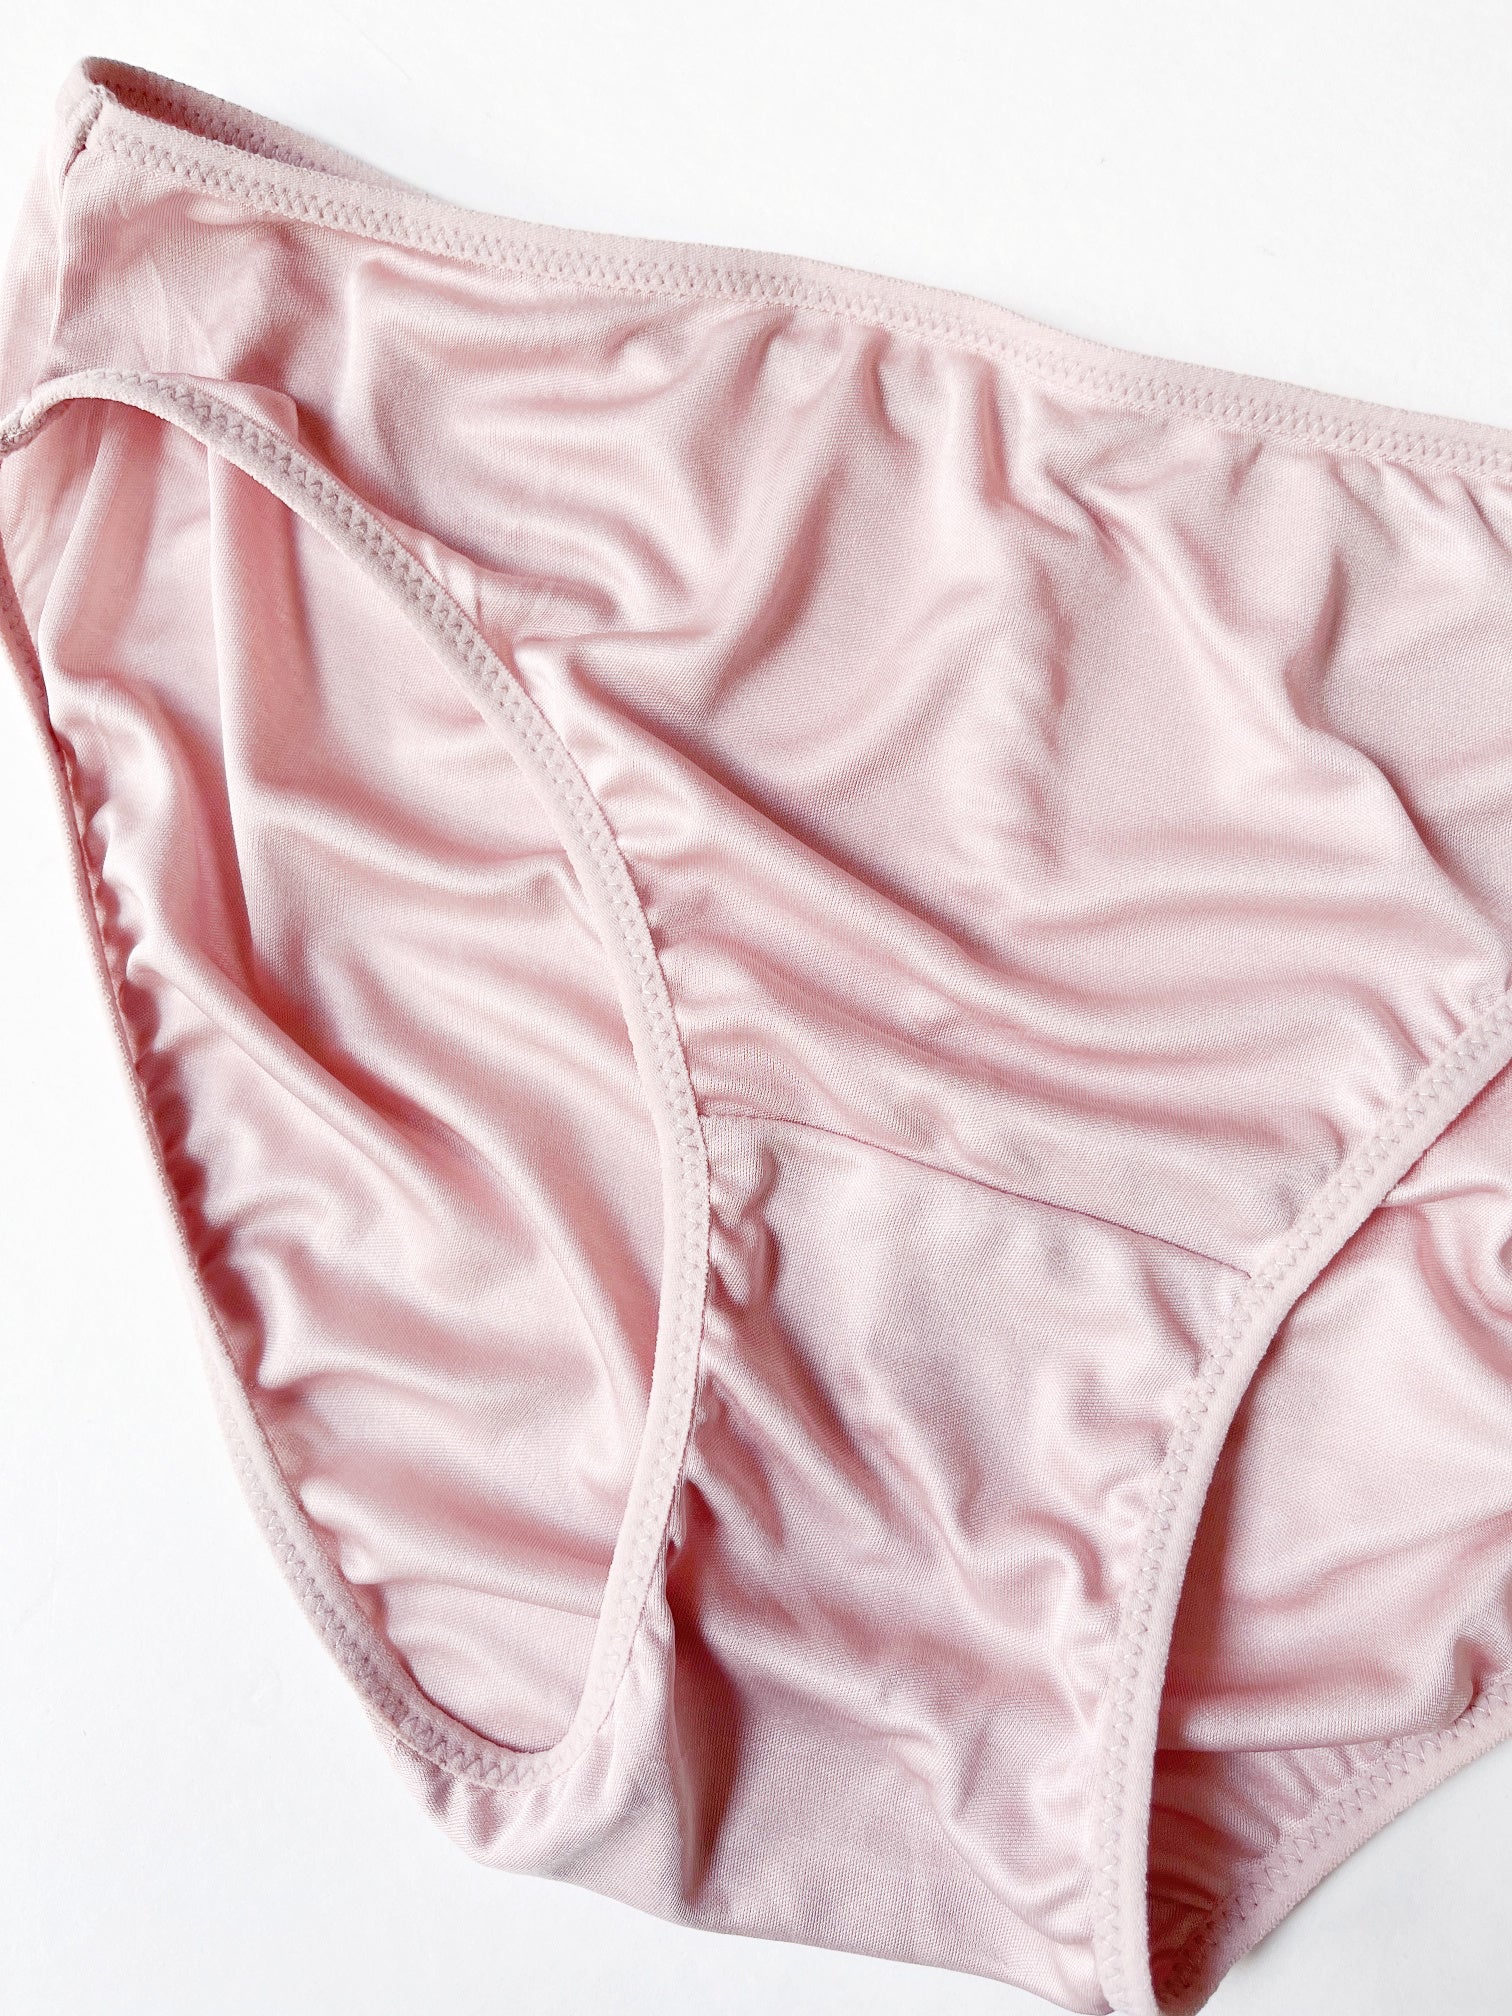 Best silk underwear women's Canada, Shop 100% Silk briefs